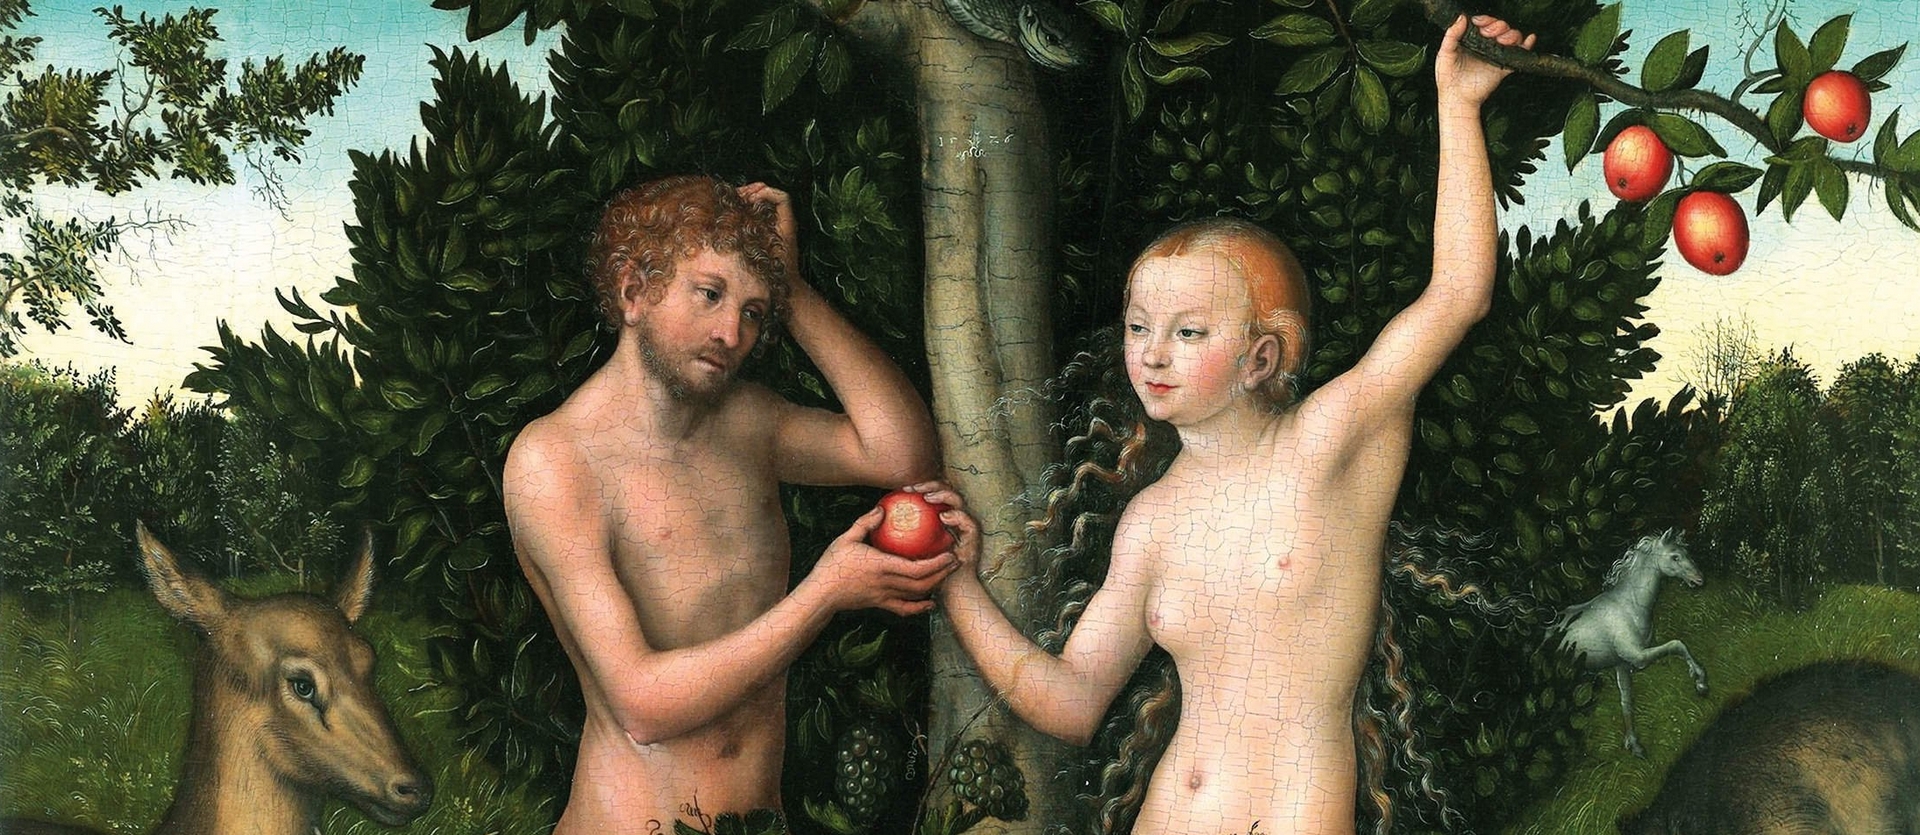 Adam et Eve au paradis, Lucas Cranach l'ancien (1526) | National Gallery Londres